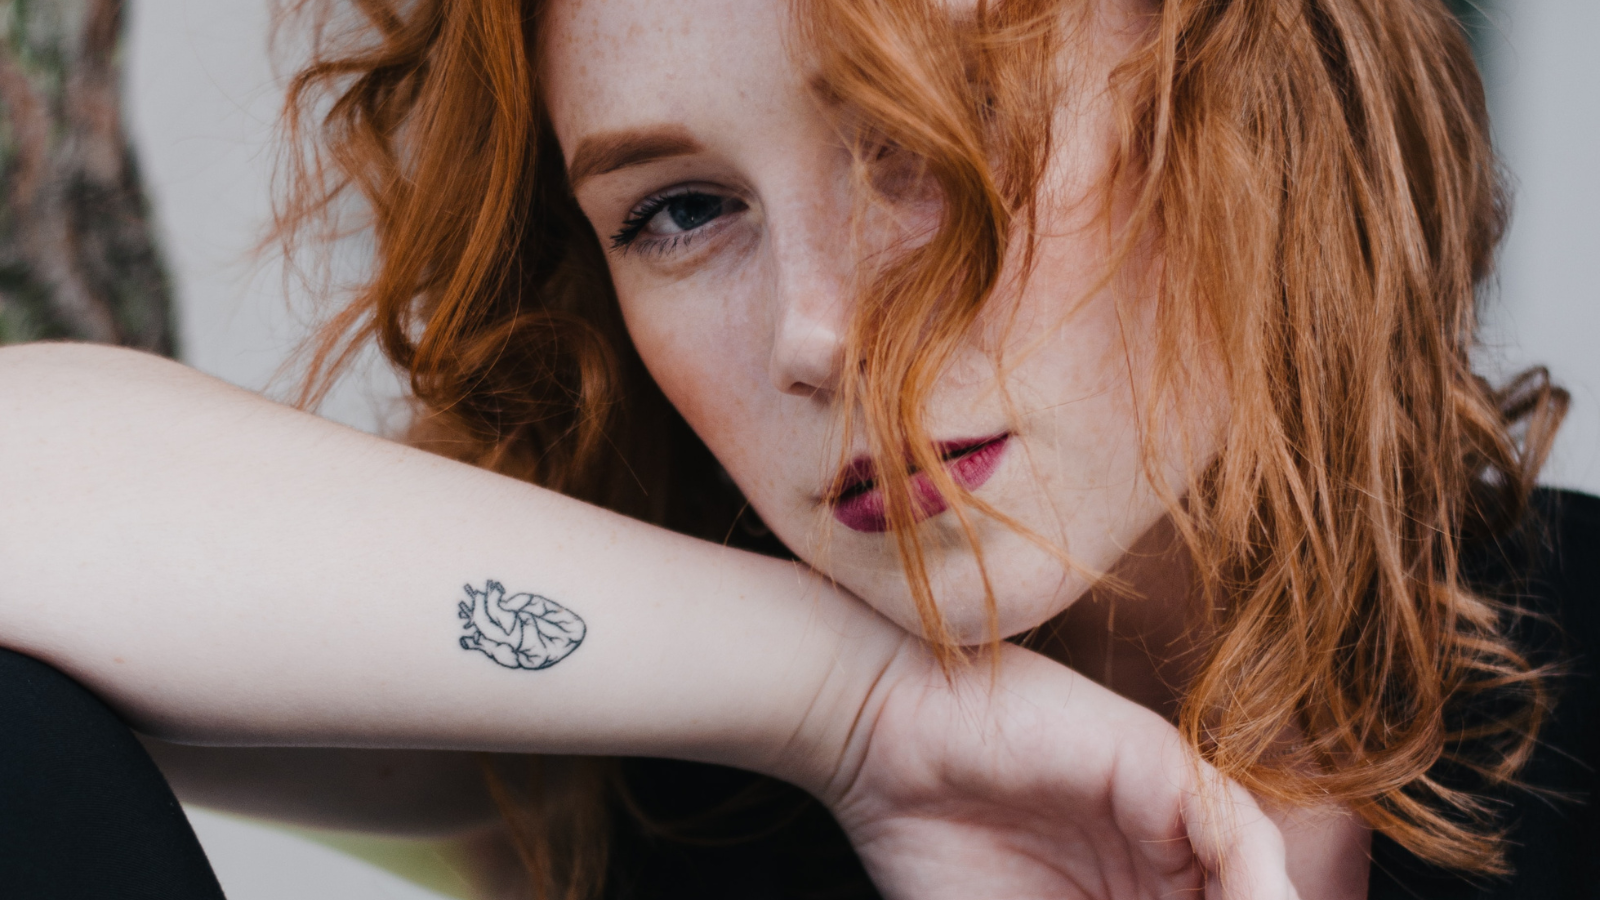 Couple Tattoo Designs To Symbolise Your Bond | HerZindagi